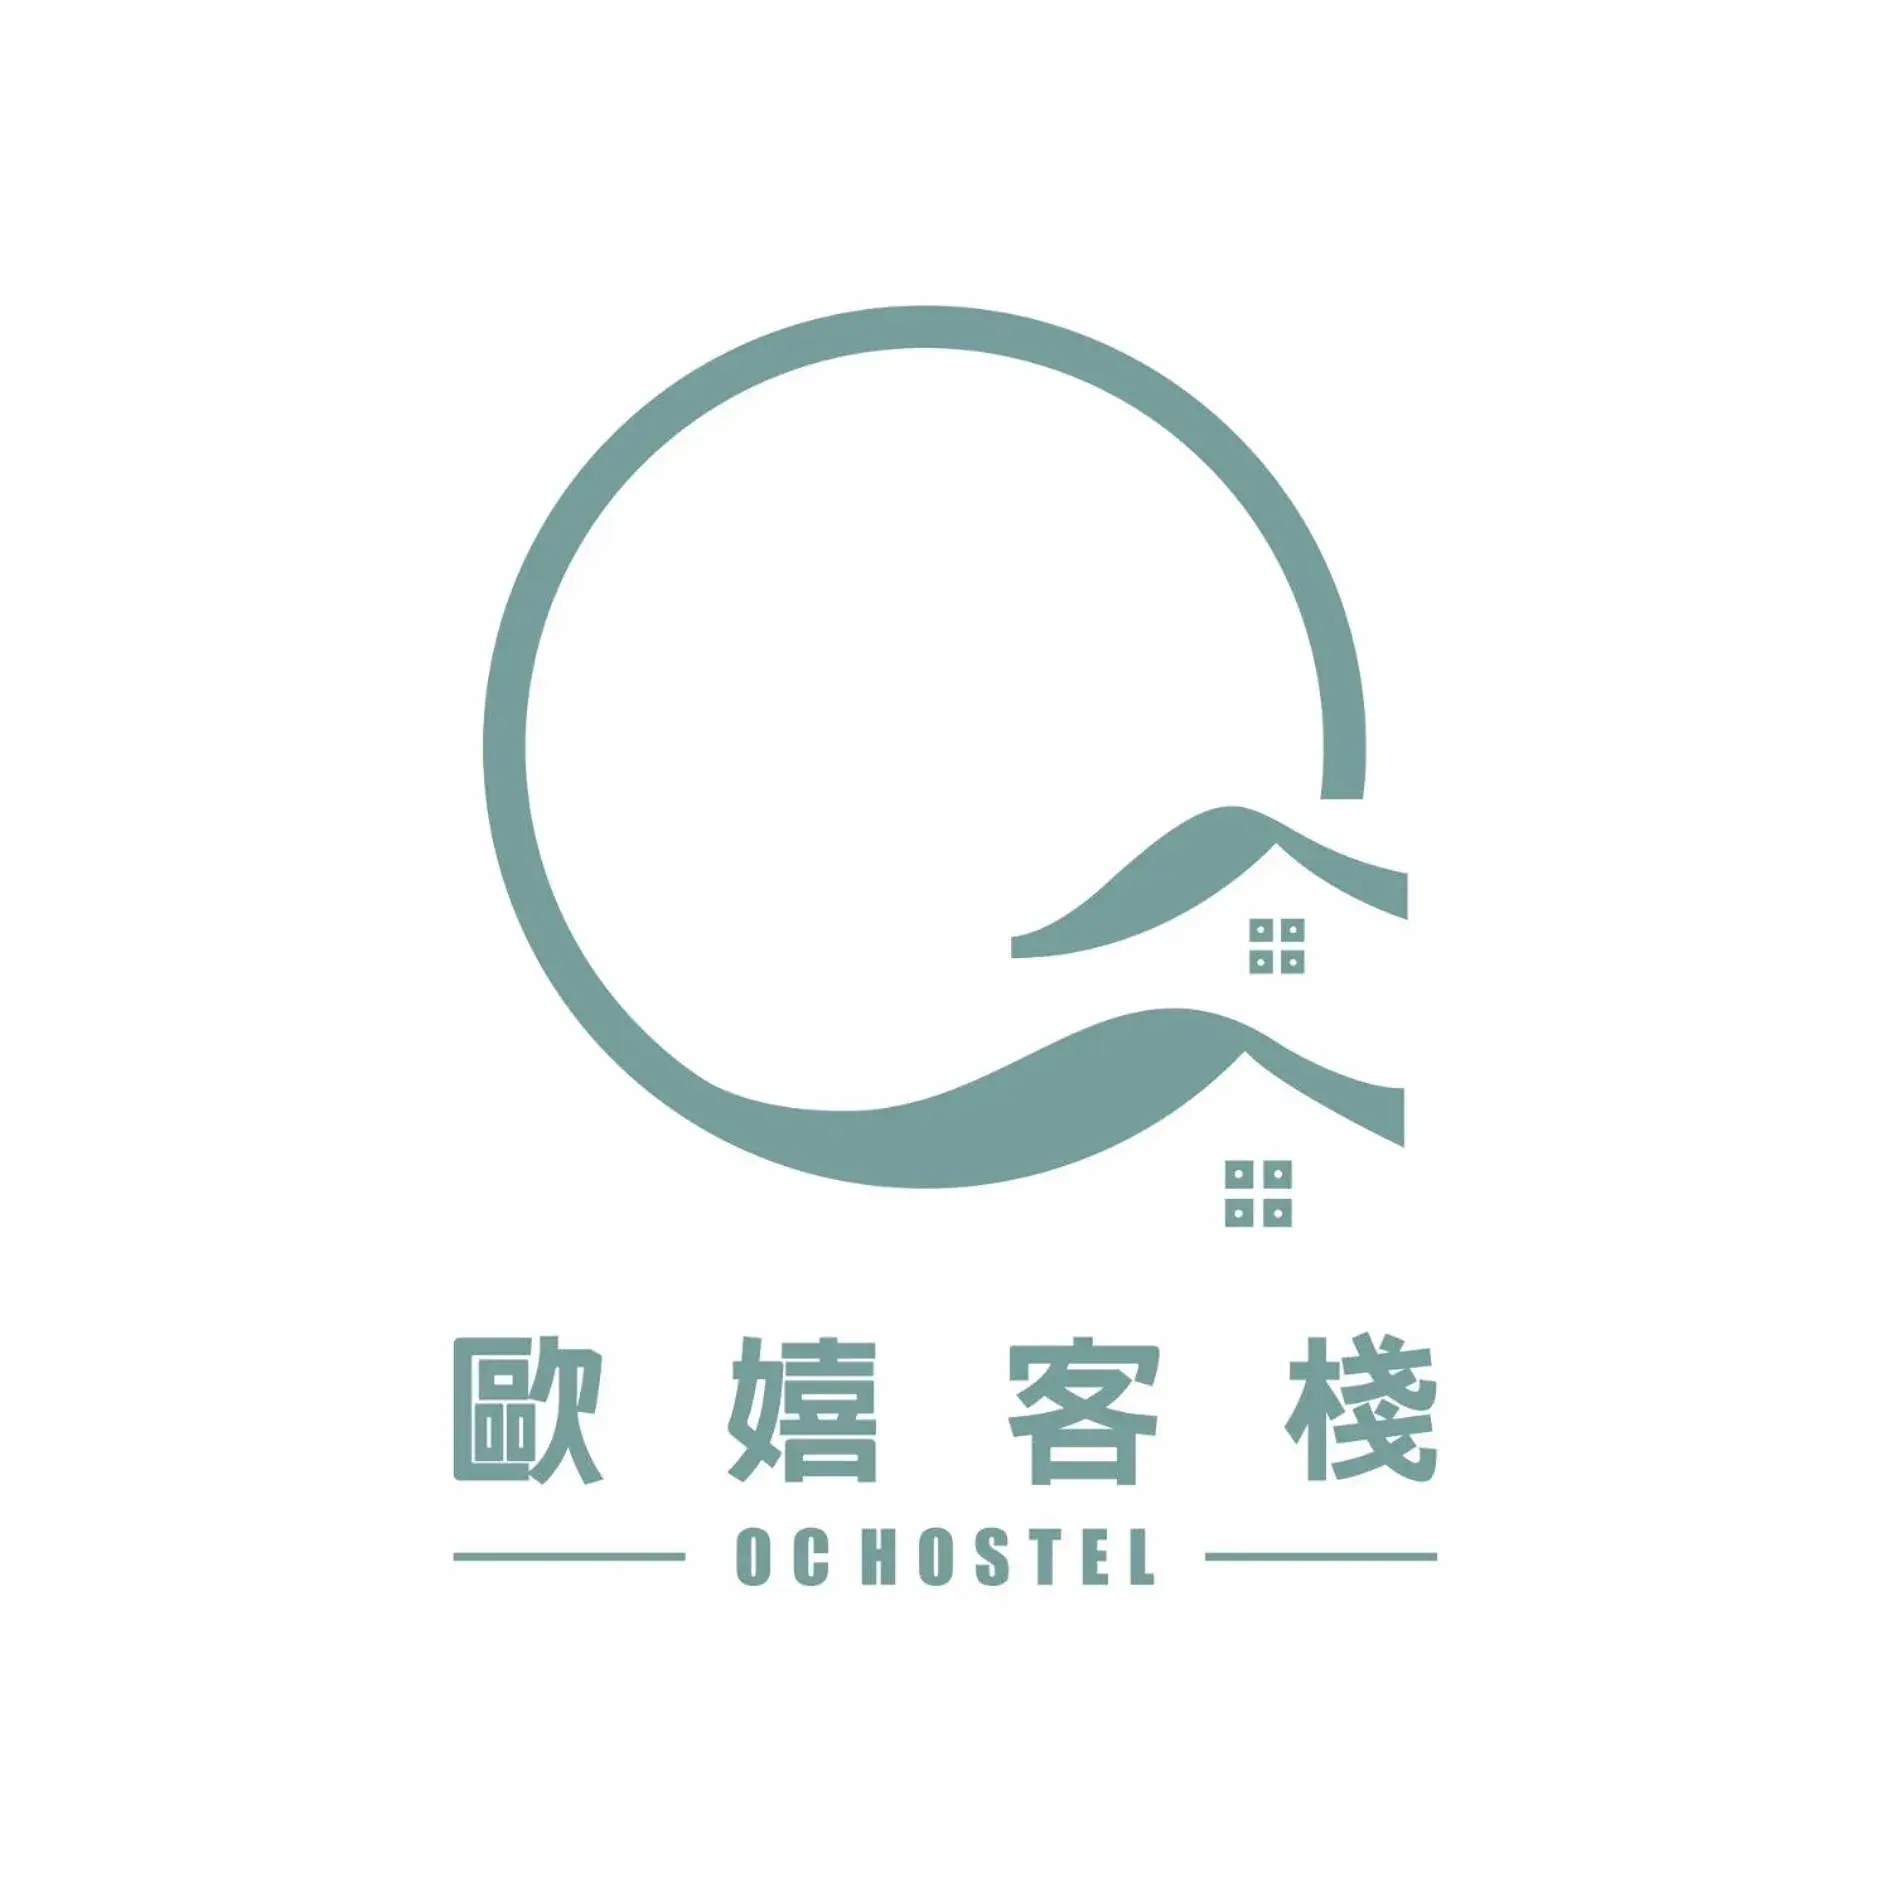 Property logo or sign, Property Logo/Sign in OC Hostel